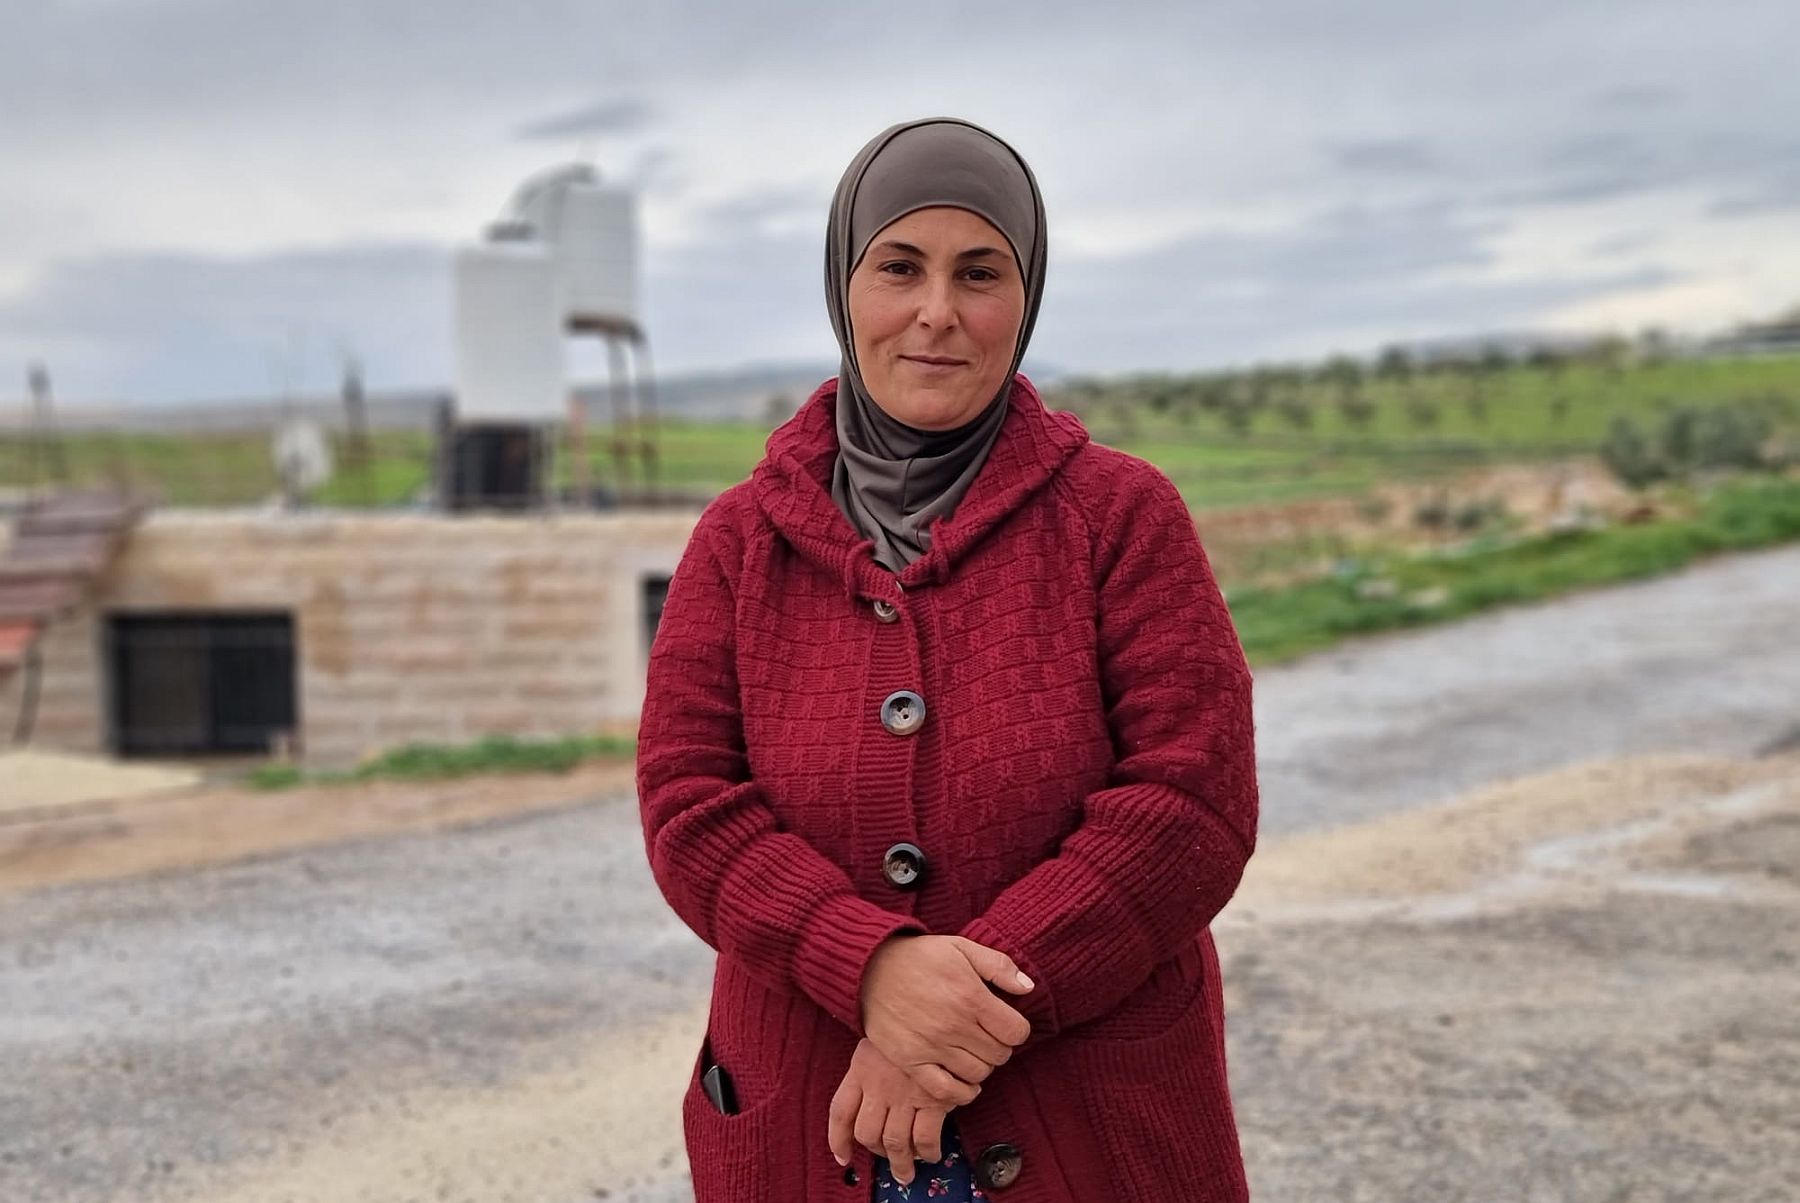 "חצי מתושבי הכפר עזבו". פאדיה אל-וחש מהכפר ג'יב א-דיב (צילום: יובל אברהם)